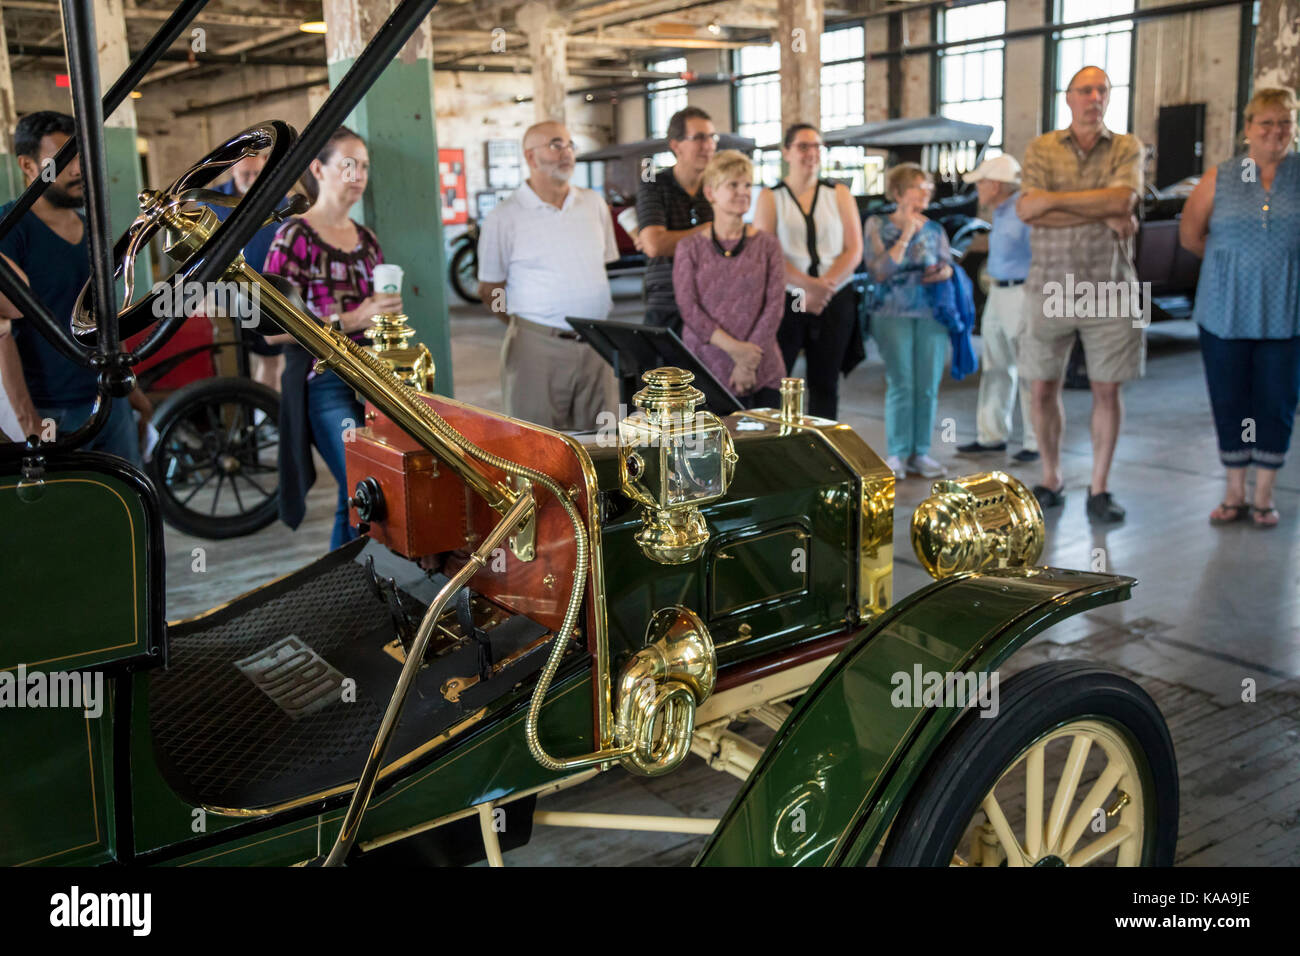 Detroit, Michigan - visite l'usine Ford de piquette avenue, où la première Ford modèle t a été construit en 1908. Le bâtiment est maintenant un musée qui h Banque D'Images